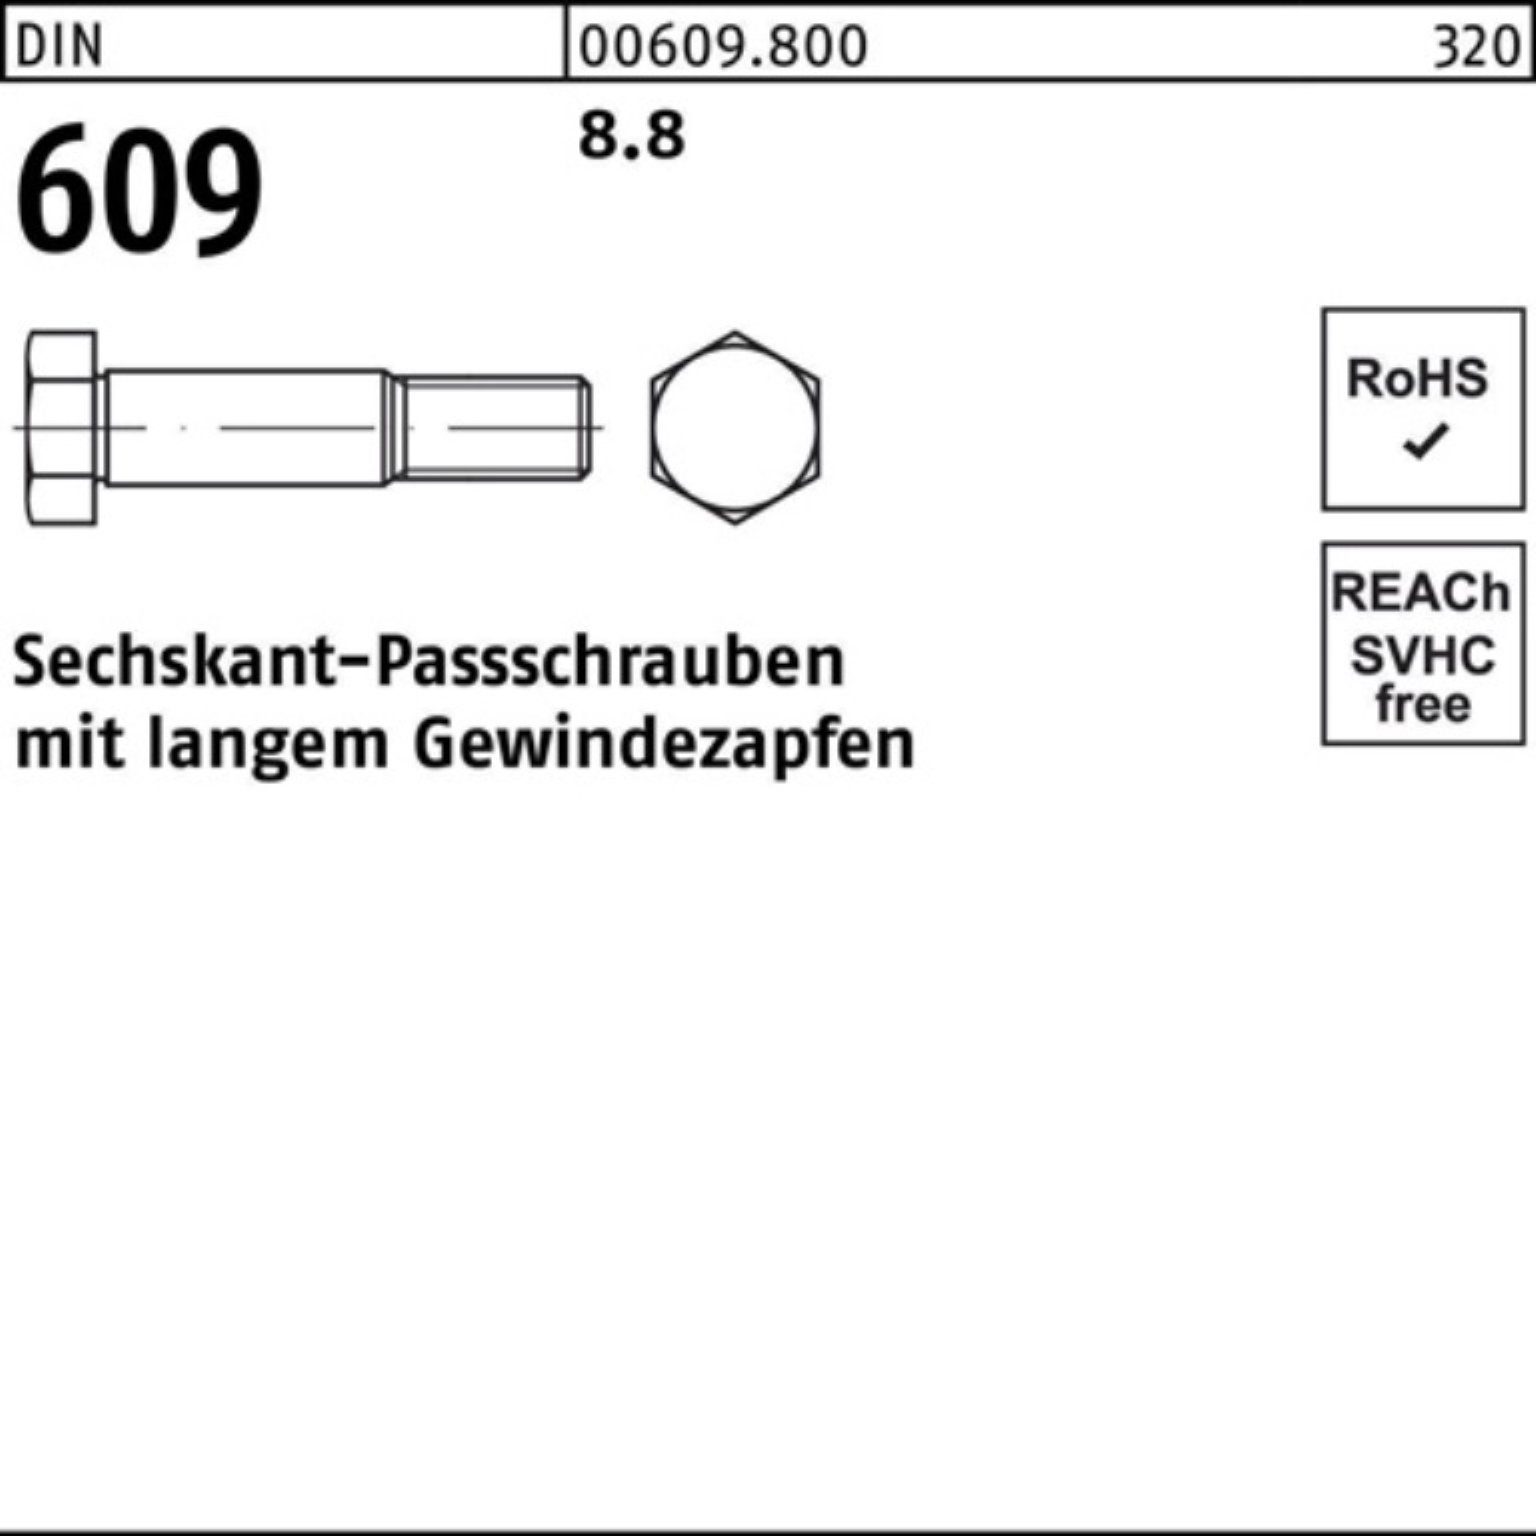 Schraube 100er Gewindezapfen 120 Reyher langem 609 DIN Sechskantpassschraube Pack M20x